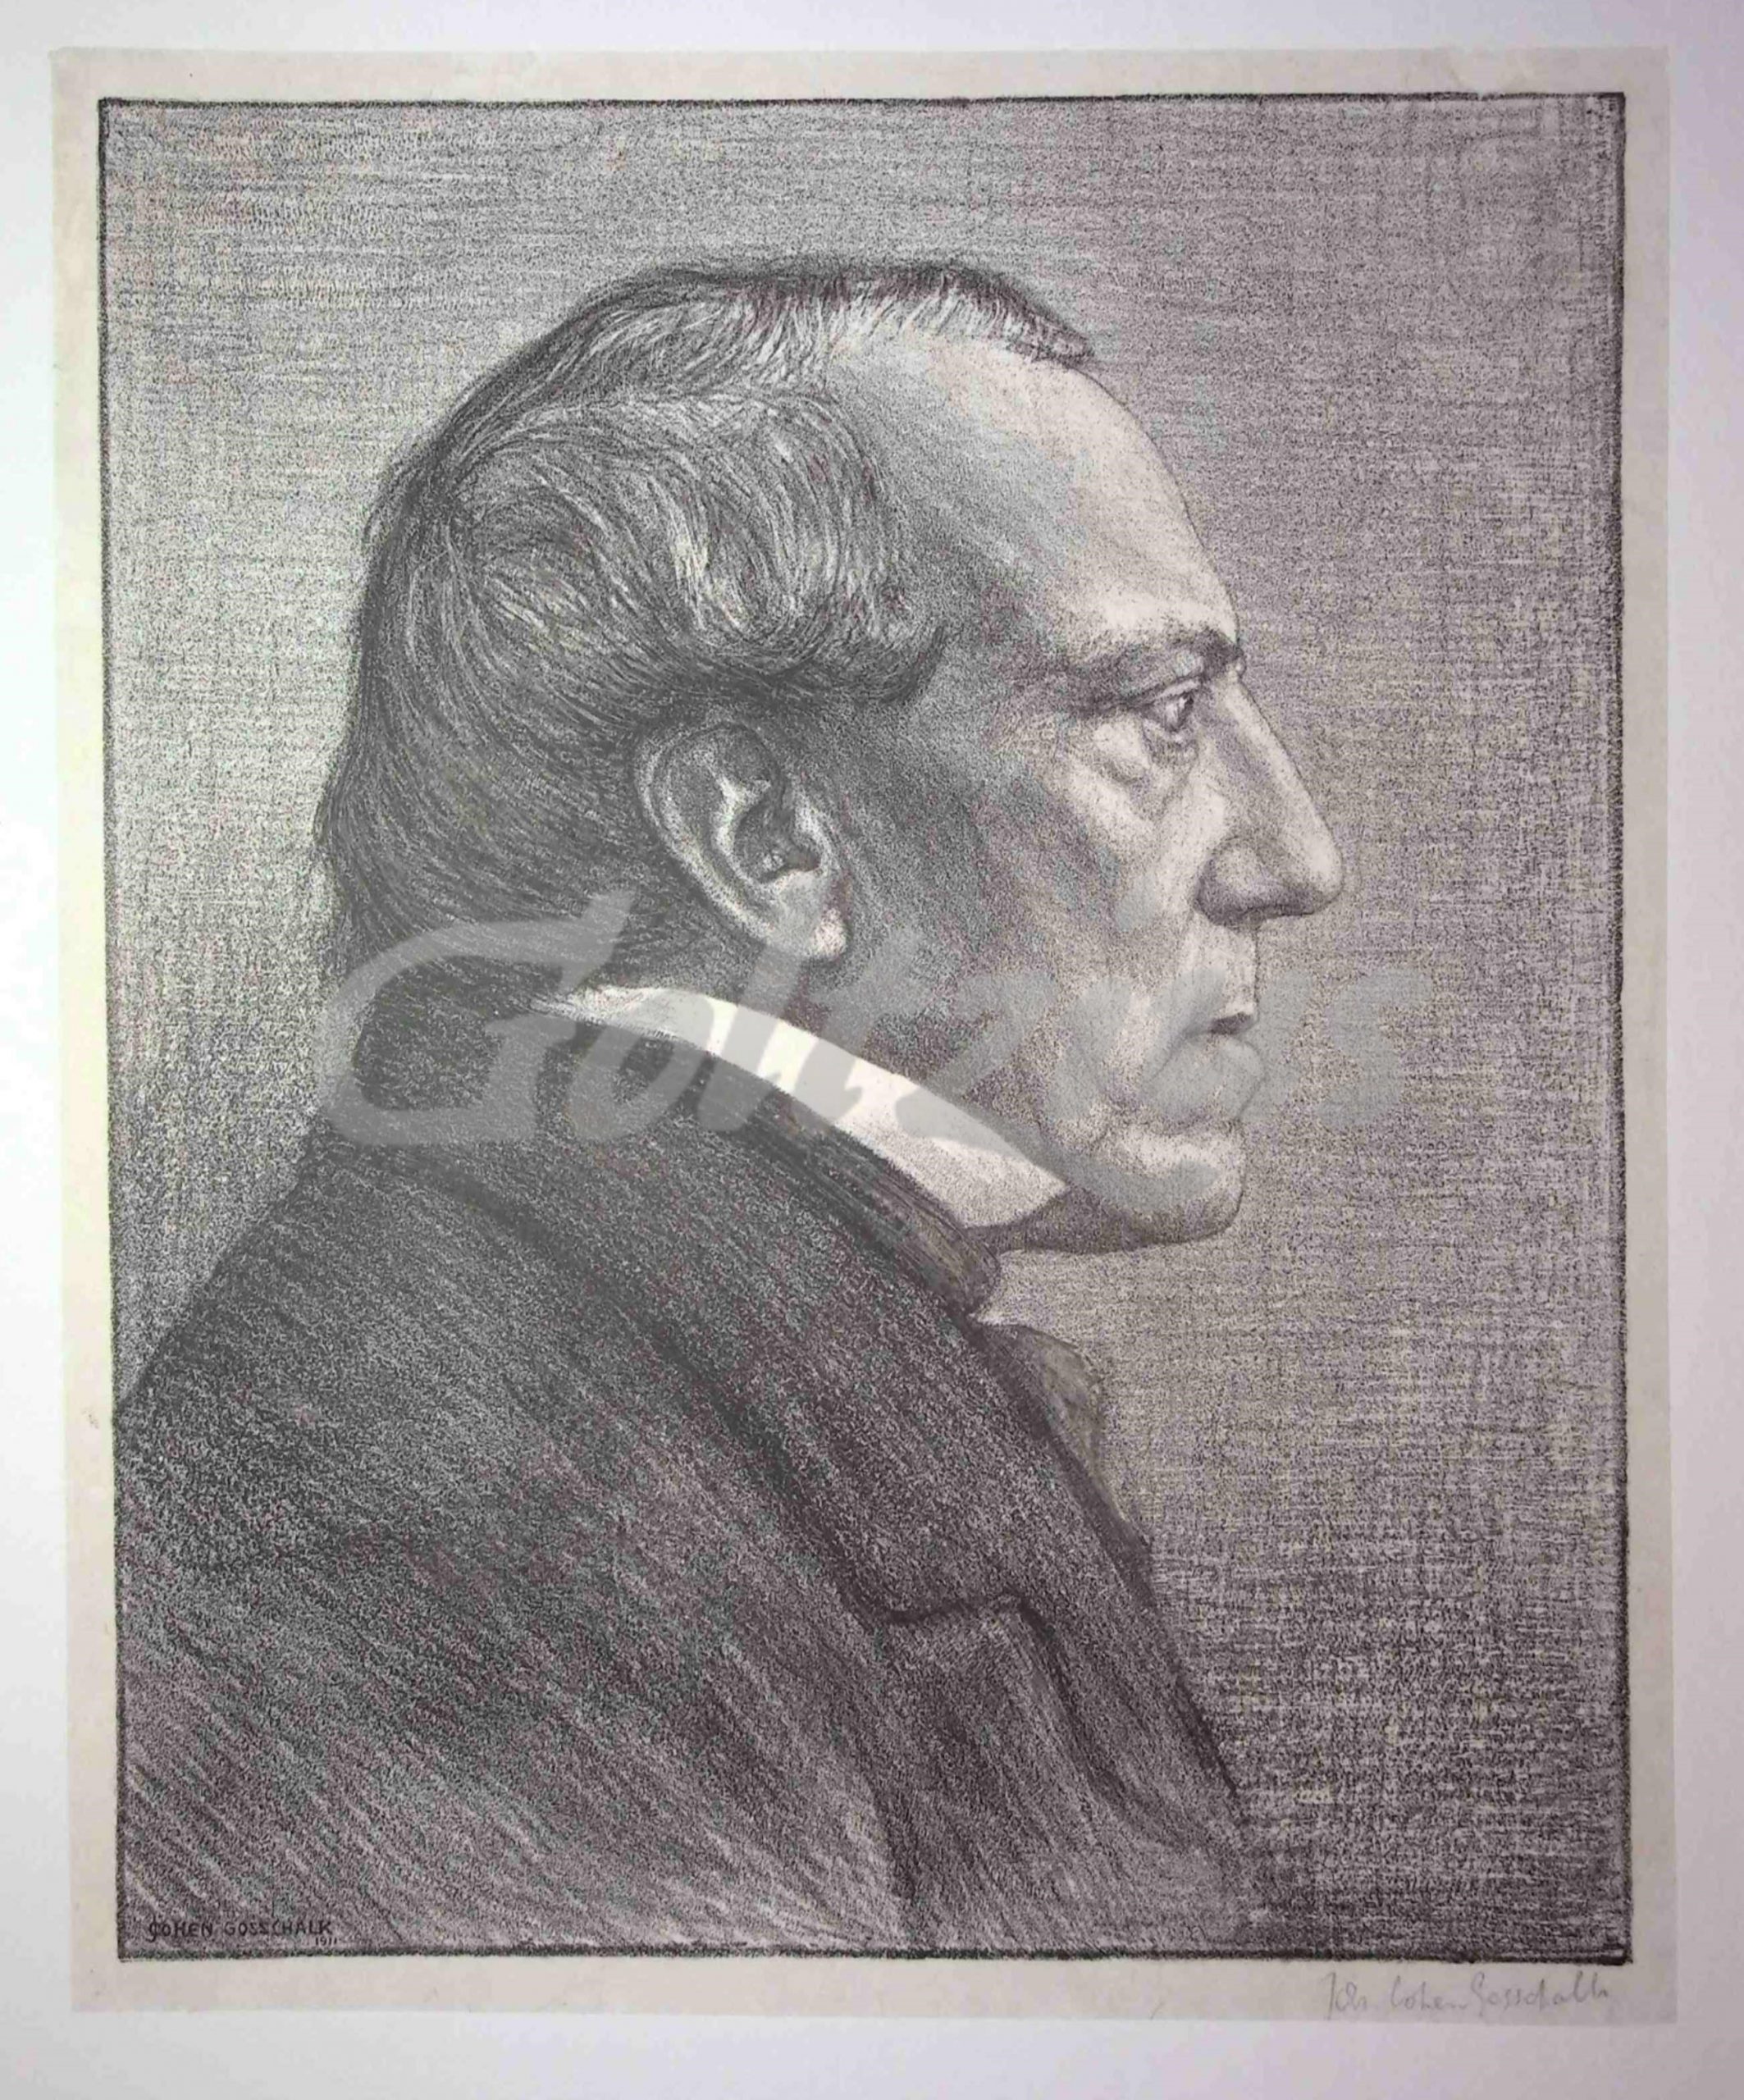 COHEN GOSSCHALK, JOHAN, Portrait of David van der Kellen